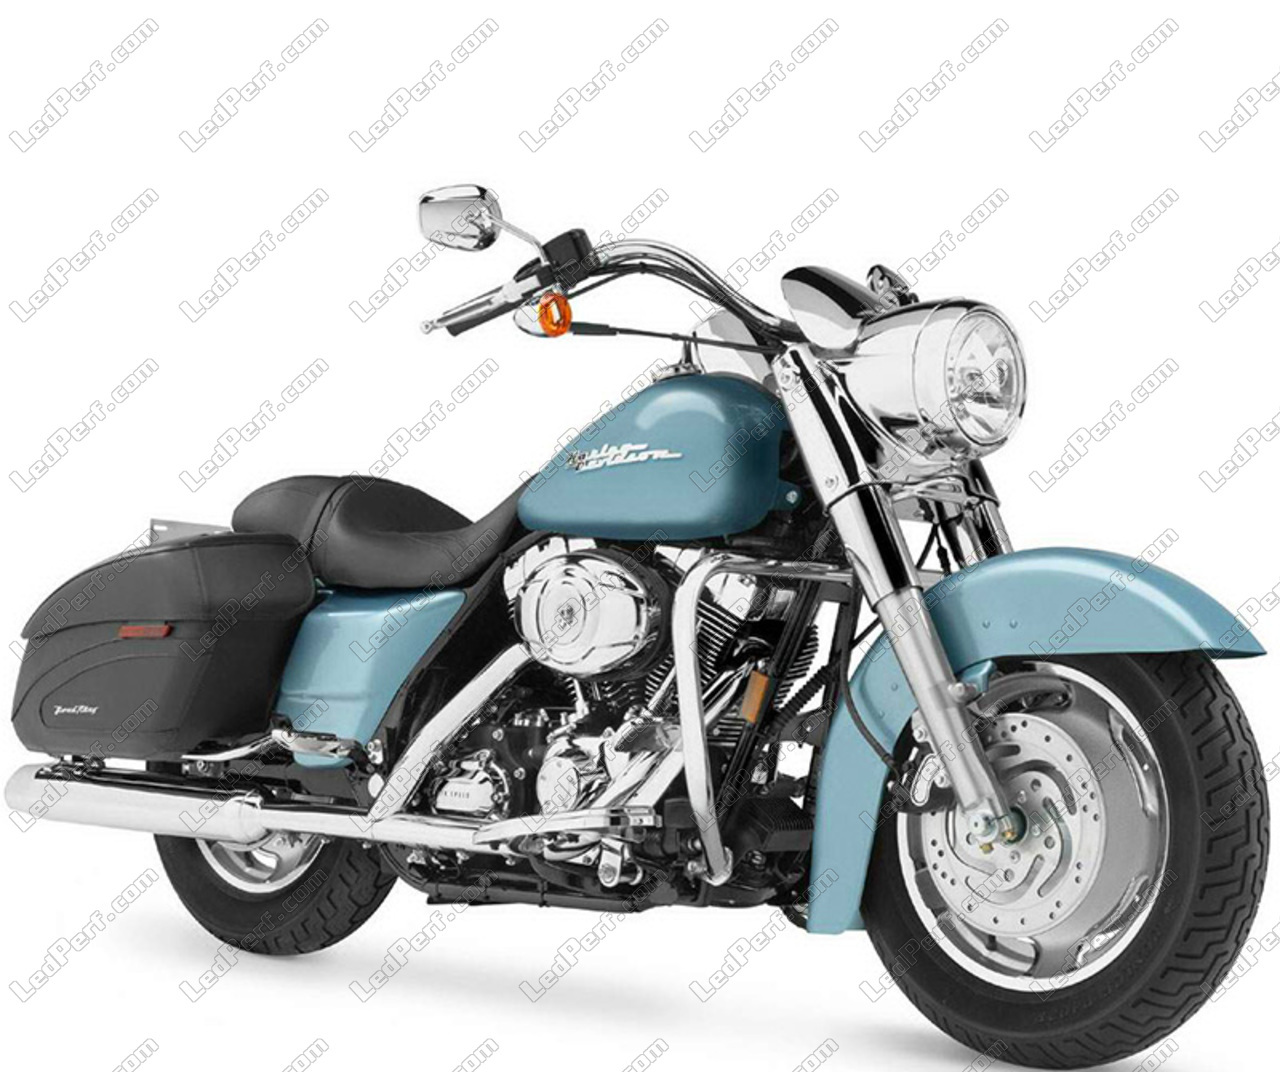 Sequentielle Dynamische Led Blinker Fur Harley Davidson Road King Custom 1584